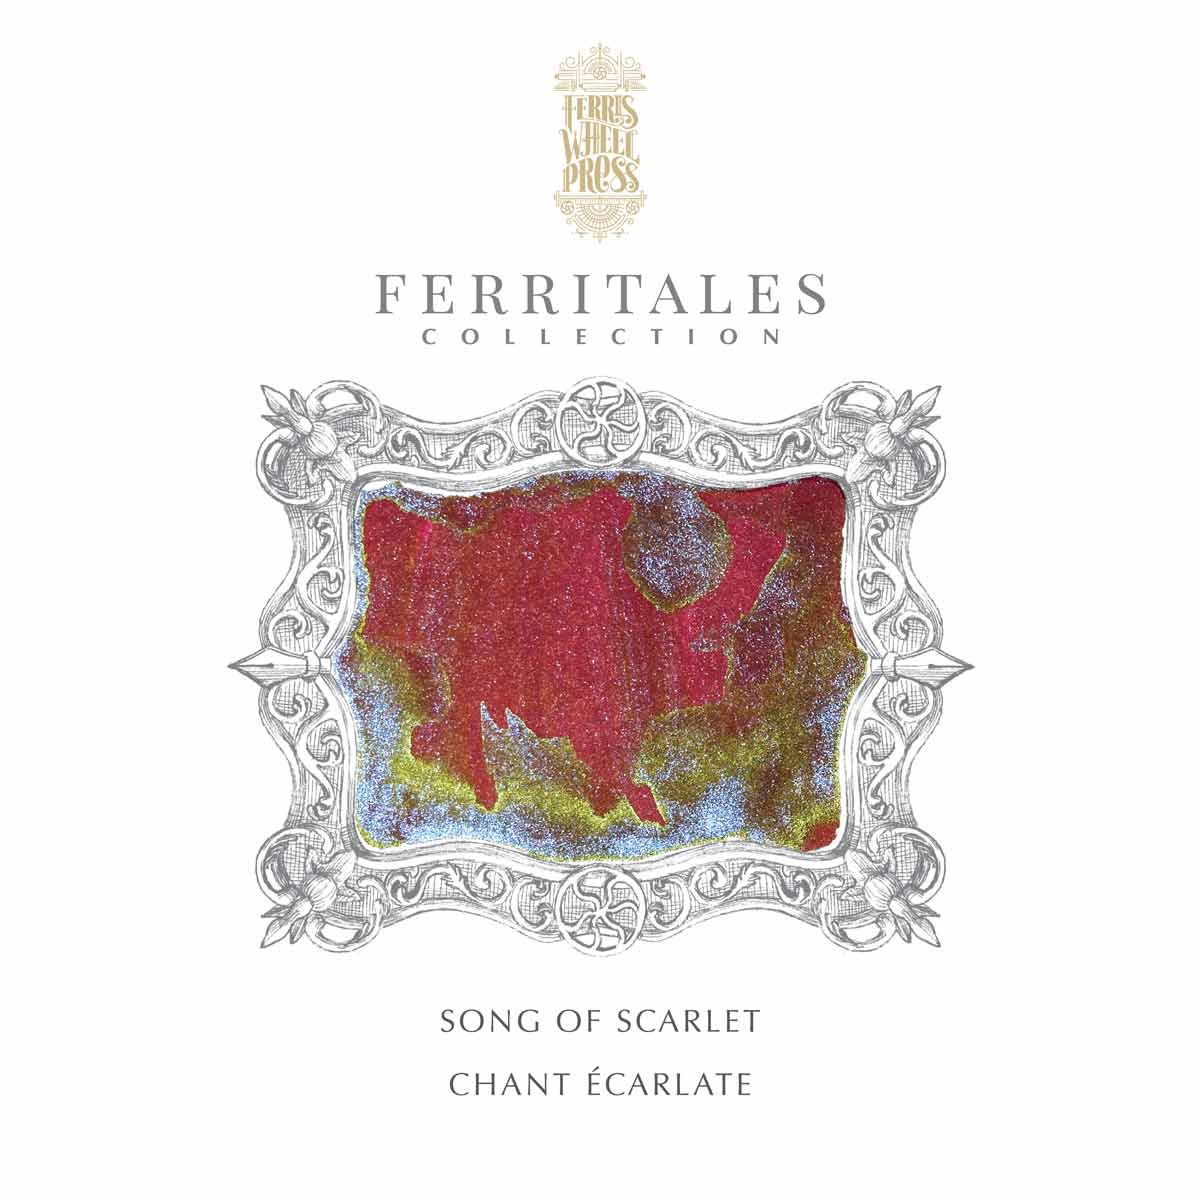 Ferris Wheel Press - Ferritales Ink - Song of Scarlet, 20 ml